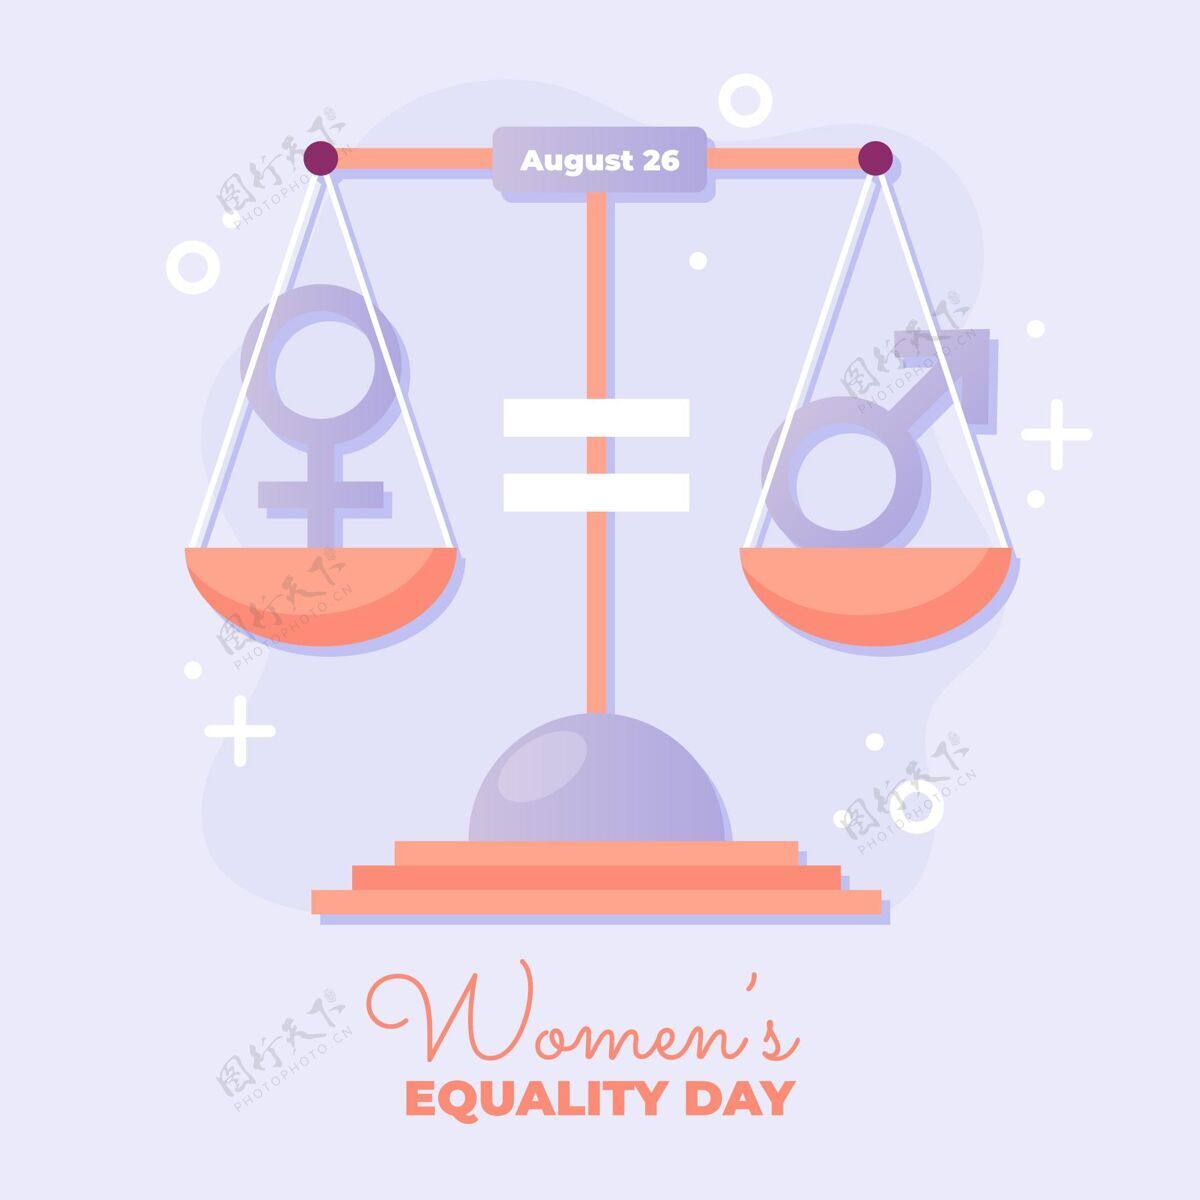 公民权利妇女平等日插画平等事件社会平等